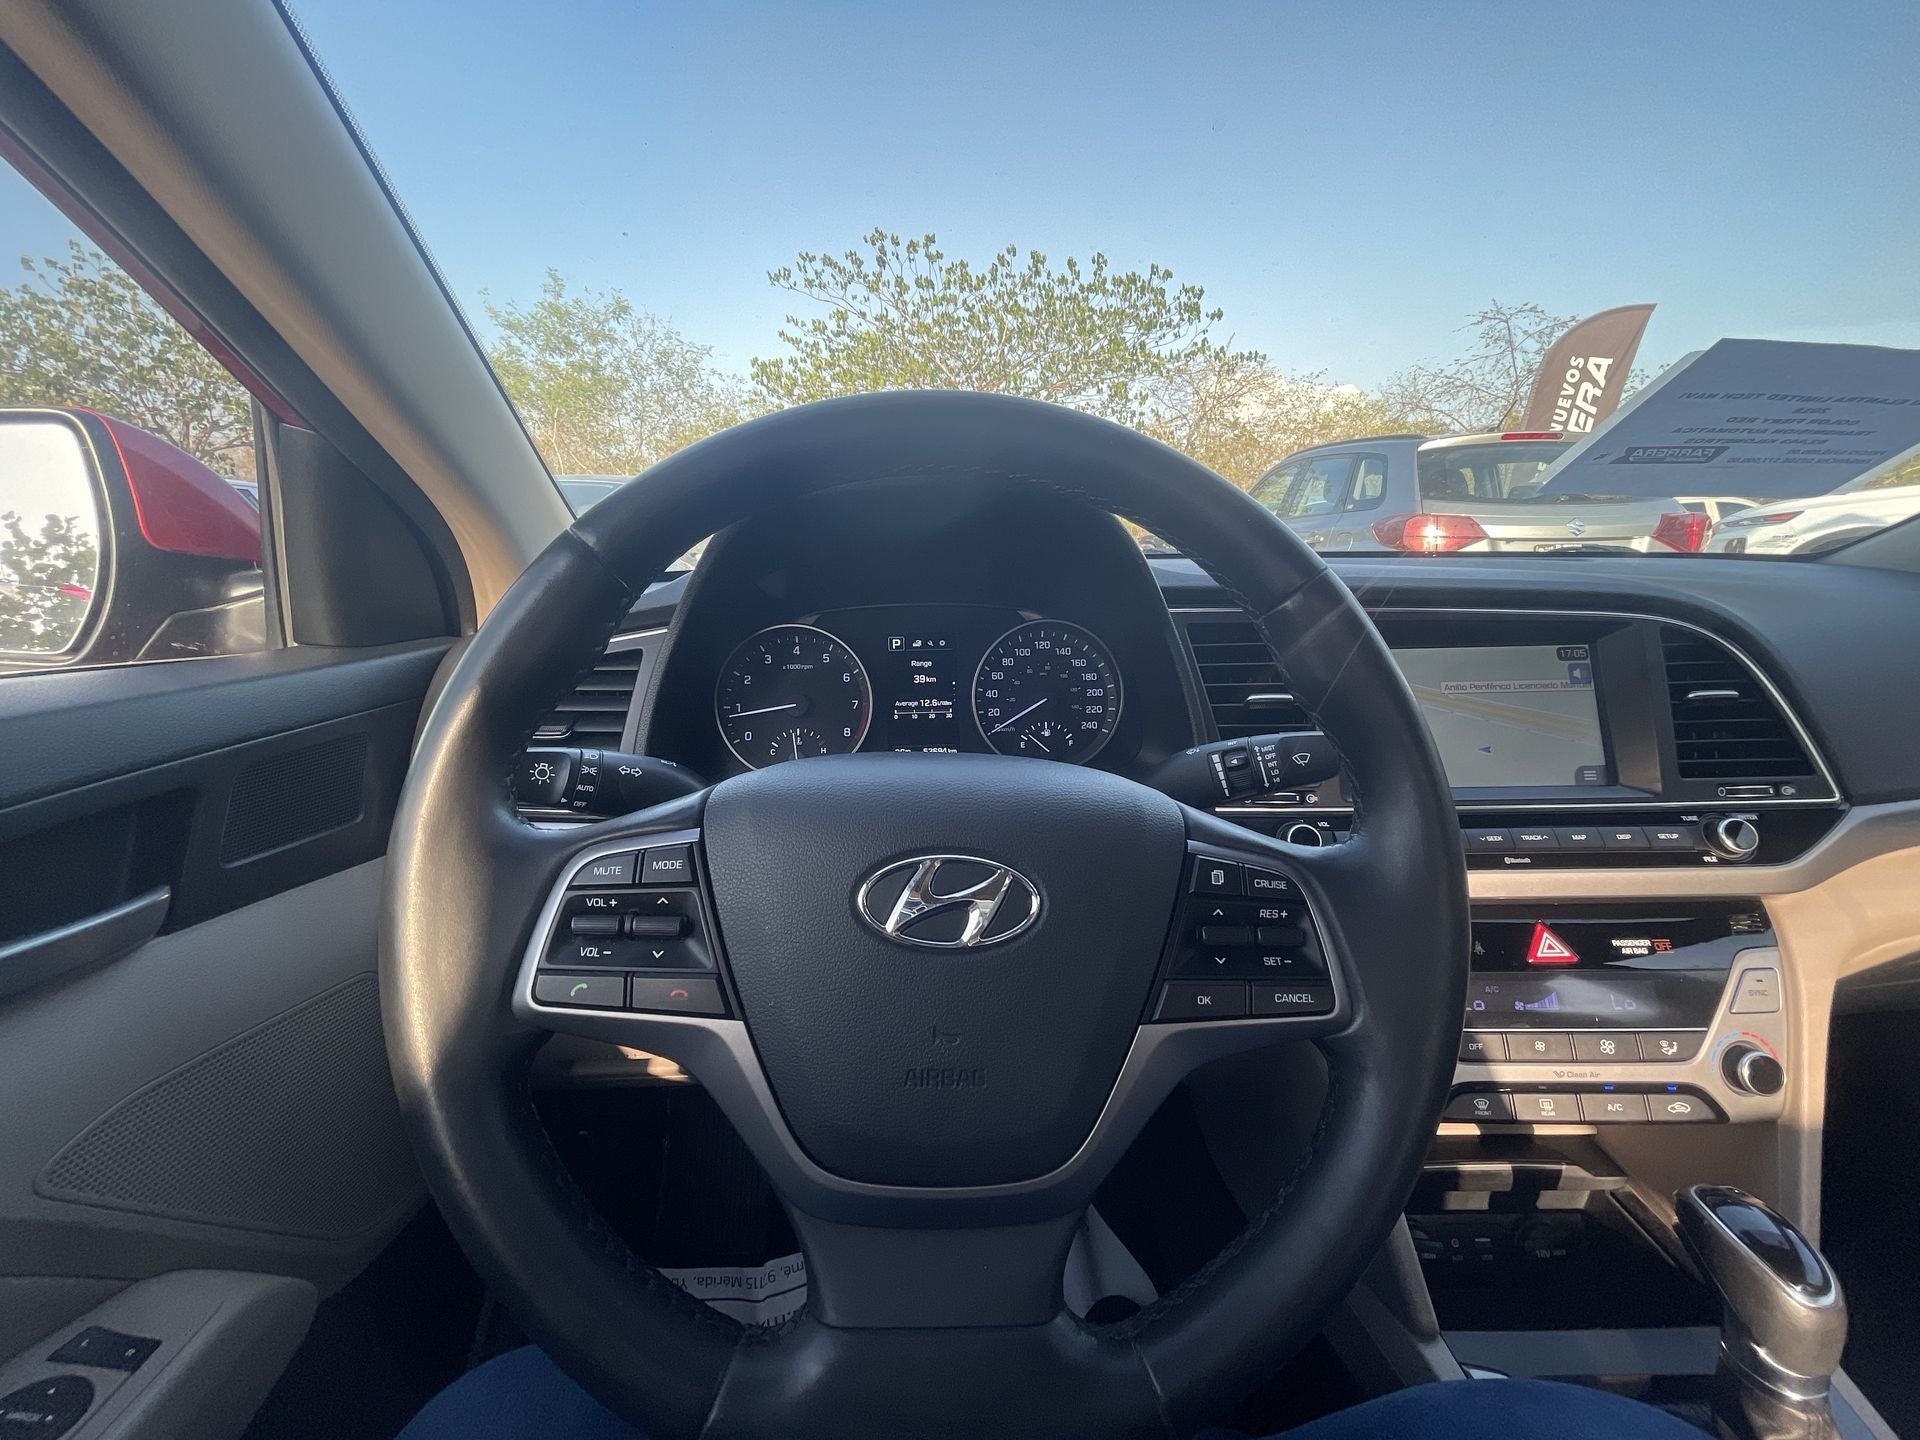 2018 Hyundai Elantra 2.0 Limited Tech Navi At